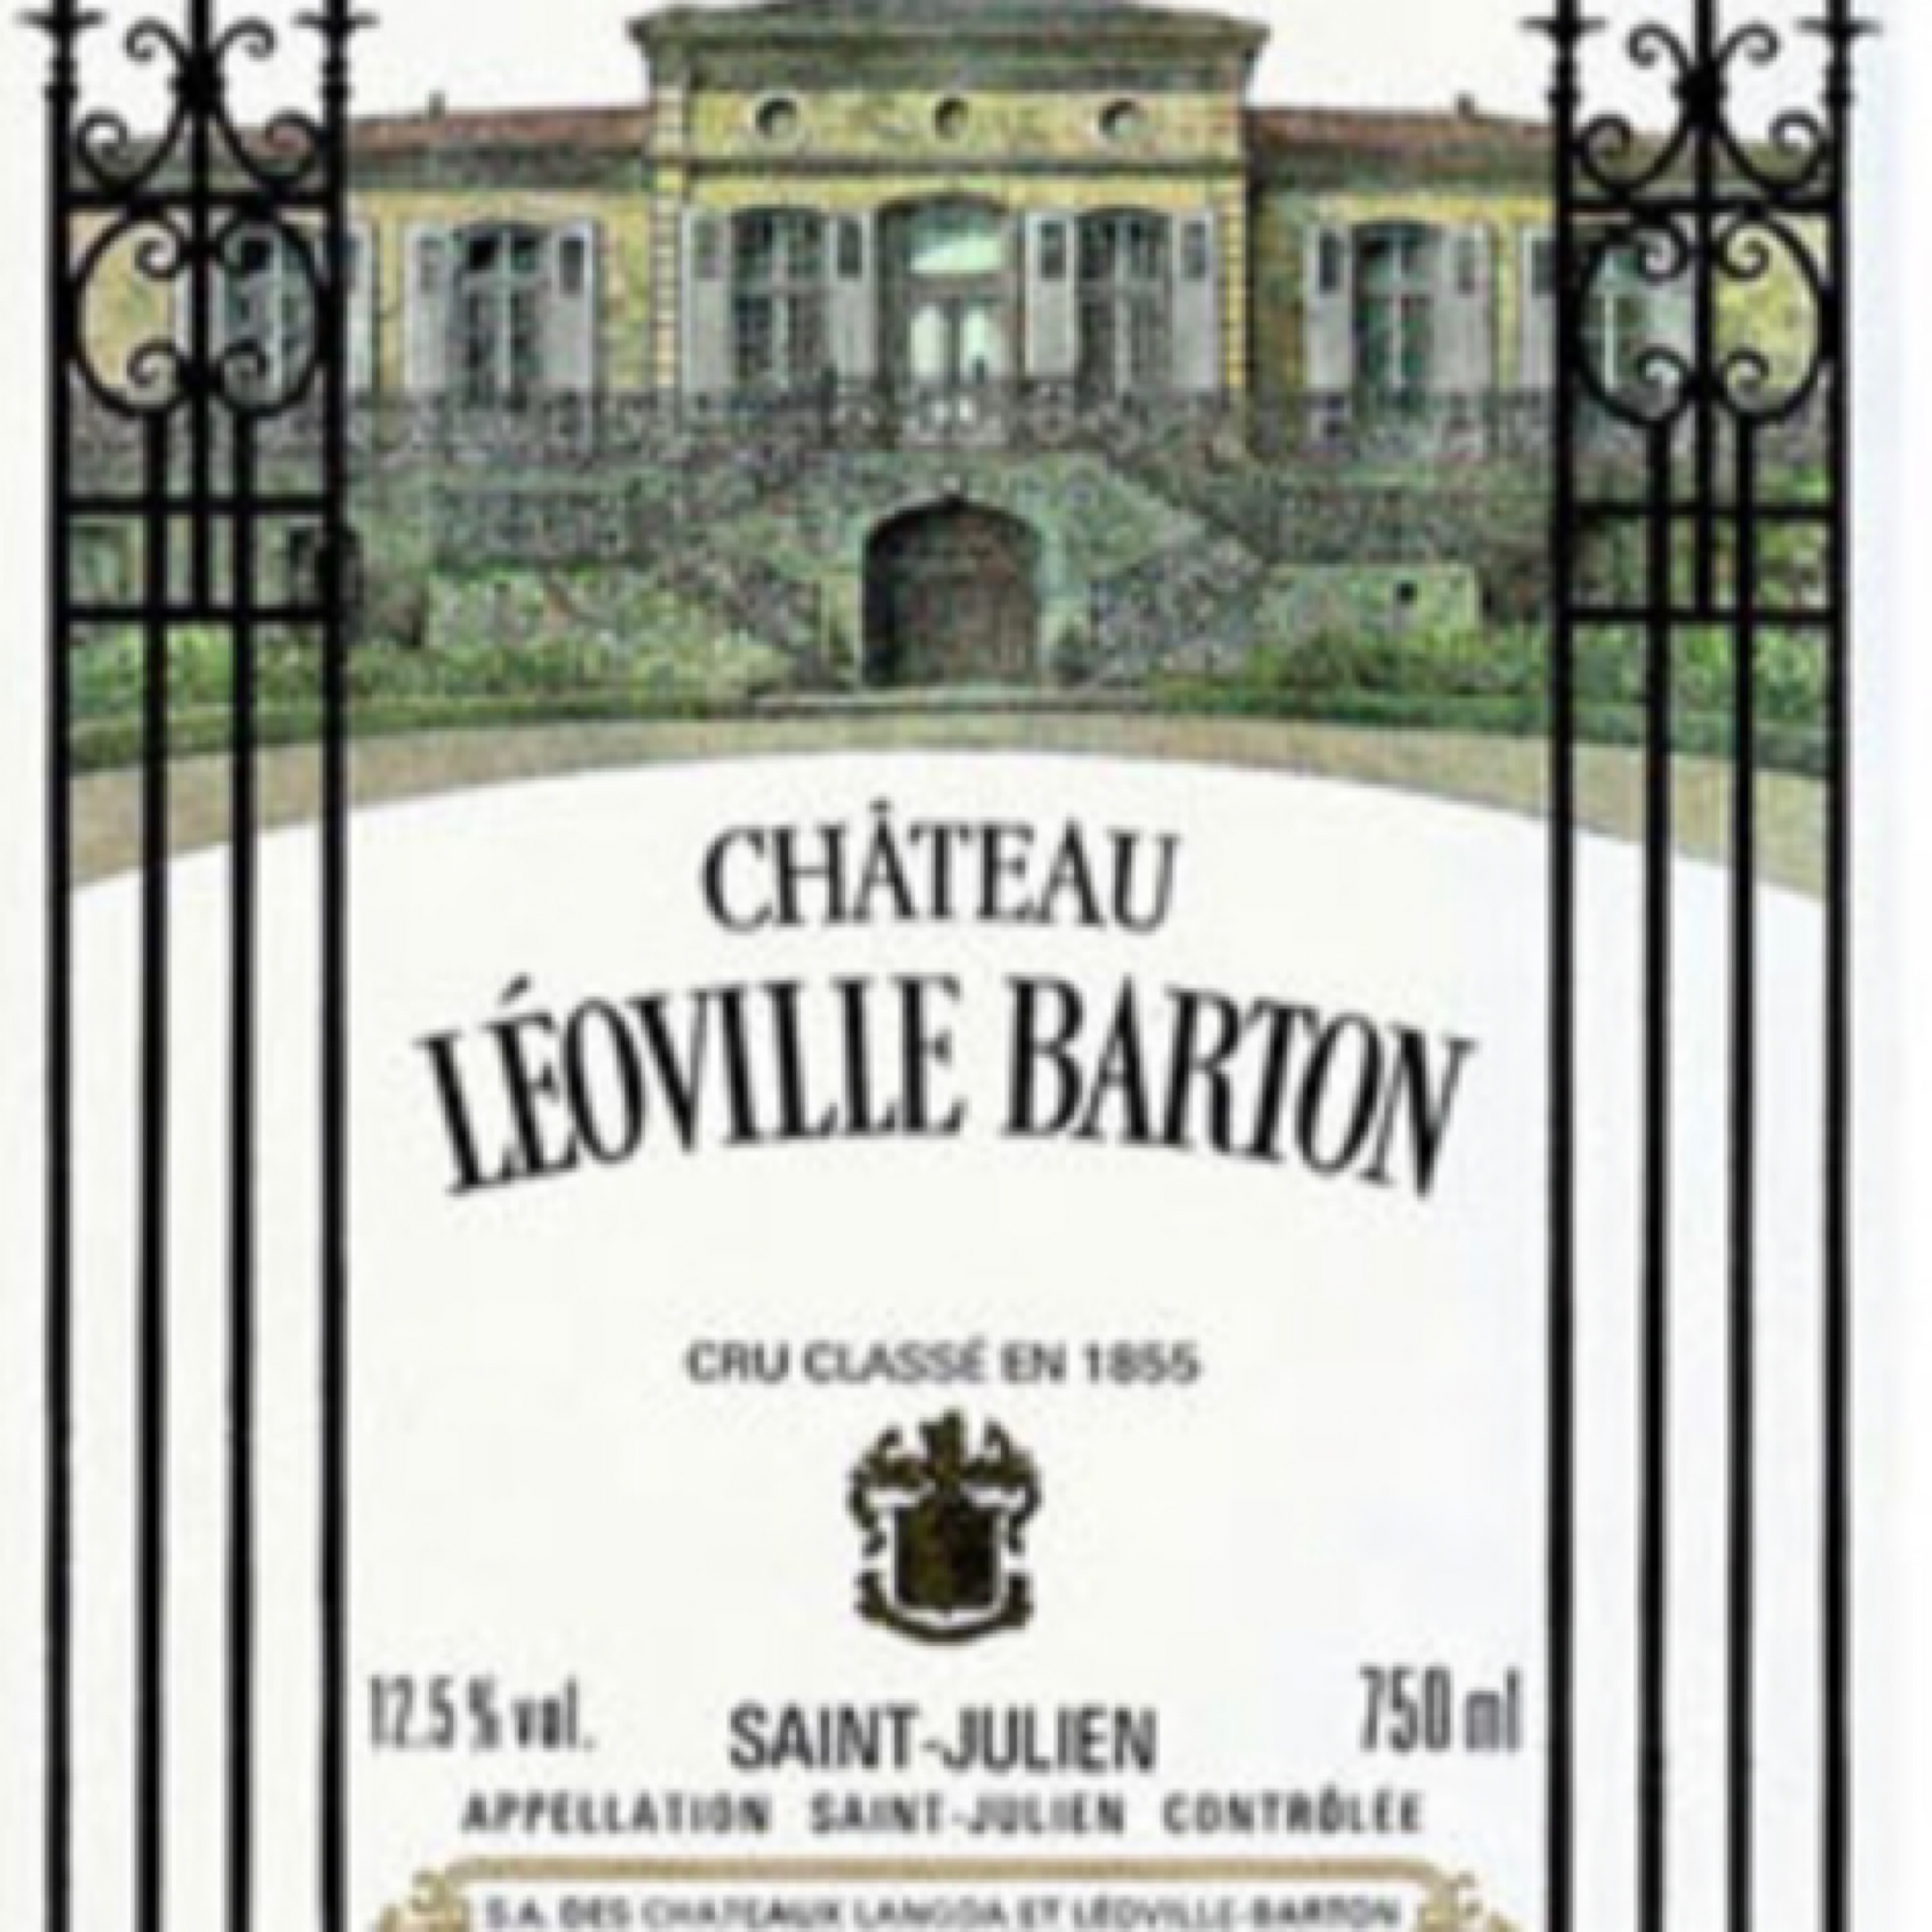 Chateau Leoville-Barton 2008 Saint-Julien